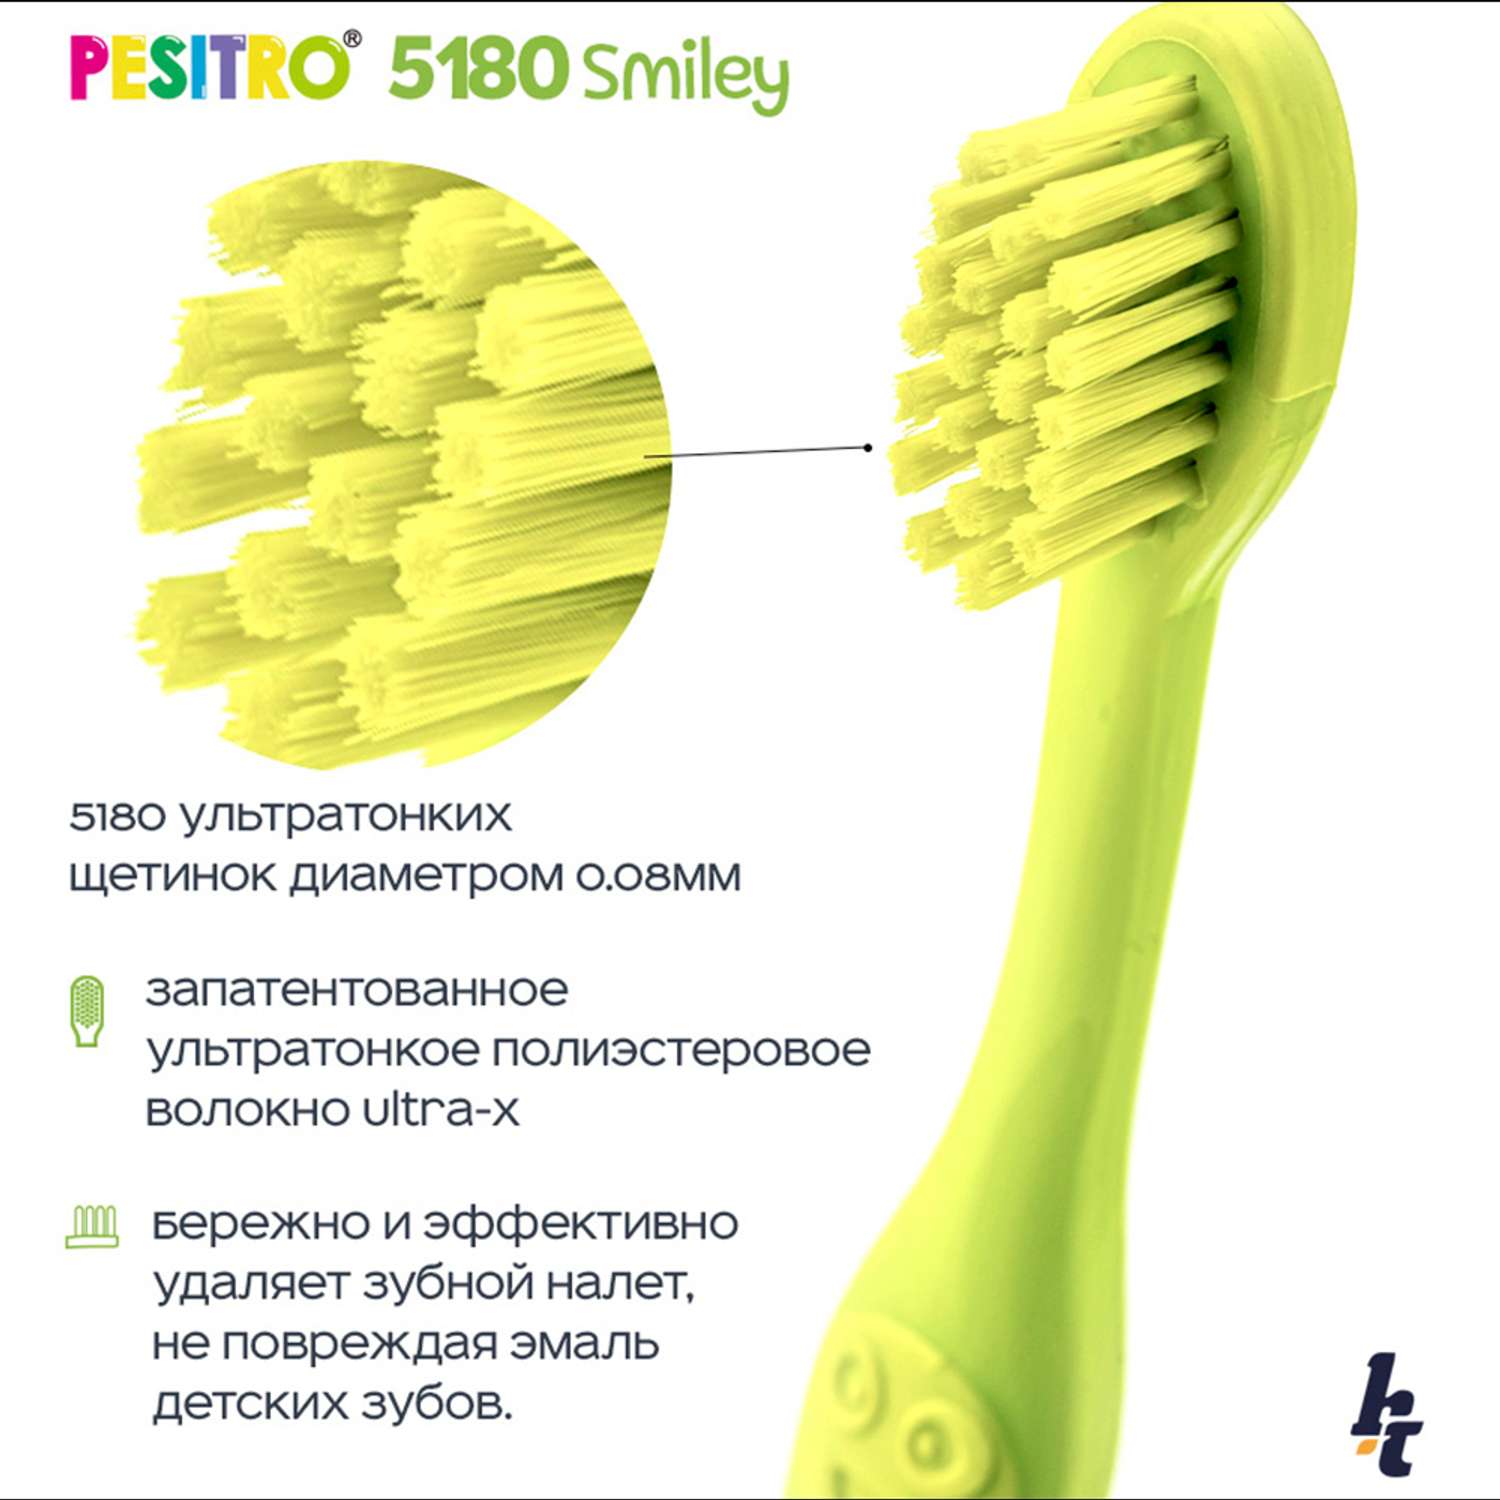 Детская зубная щетка Pesitro Smiley Ultra soft 5180 Зеленая - фото 3